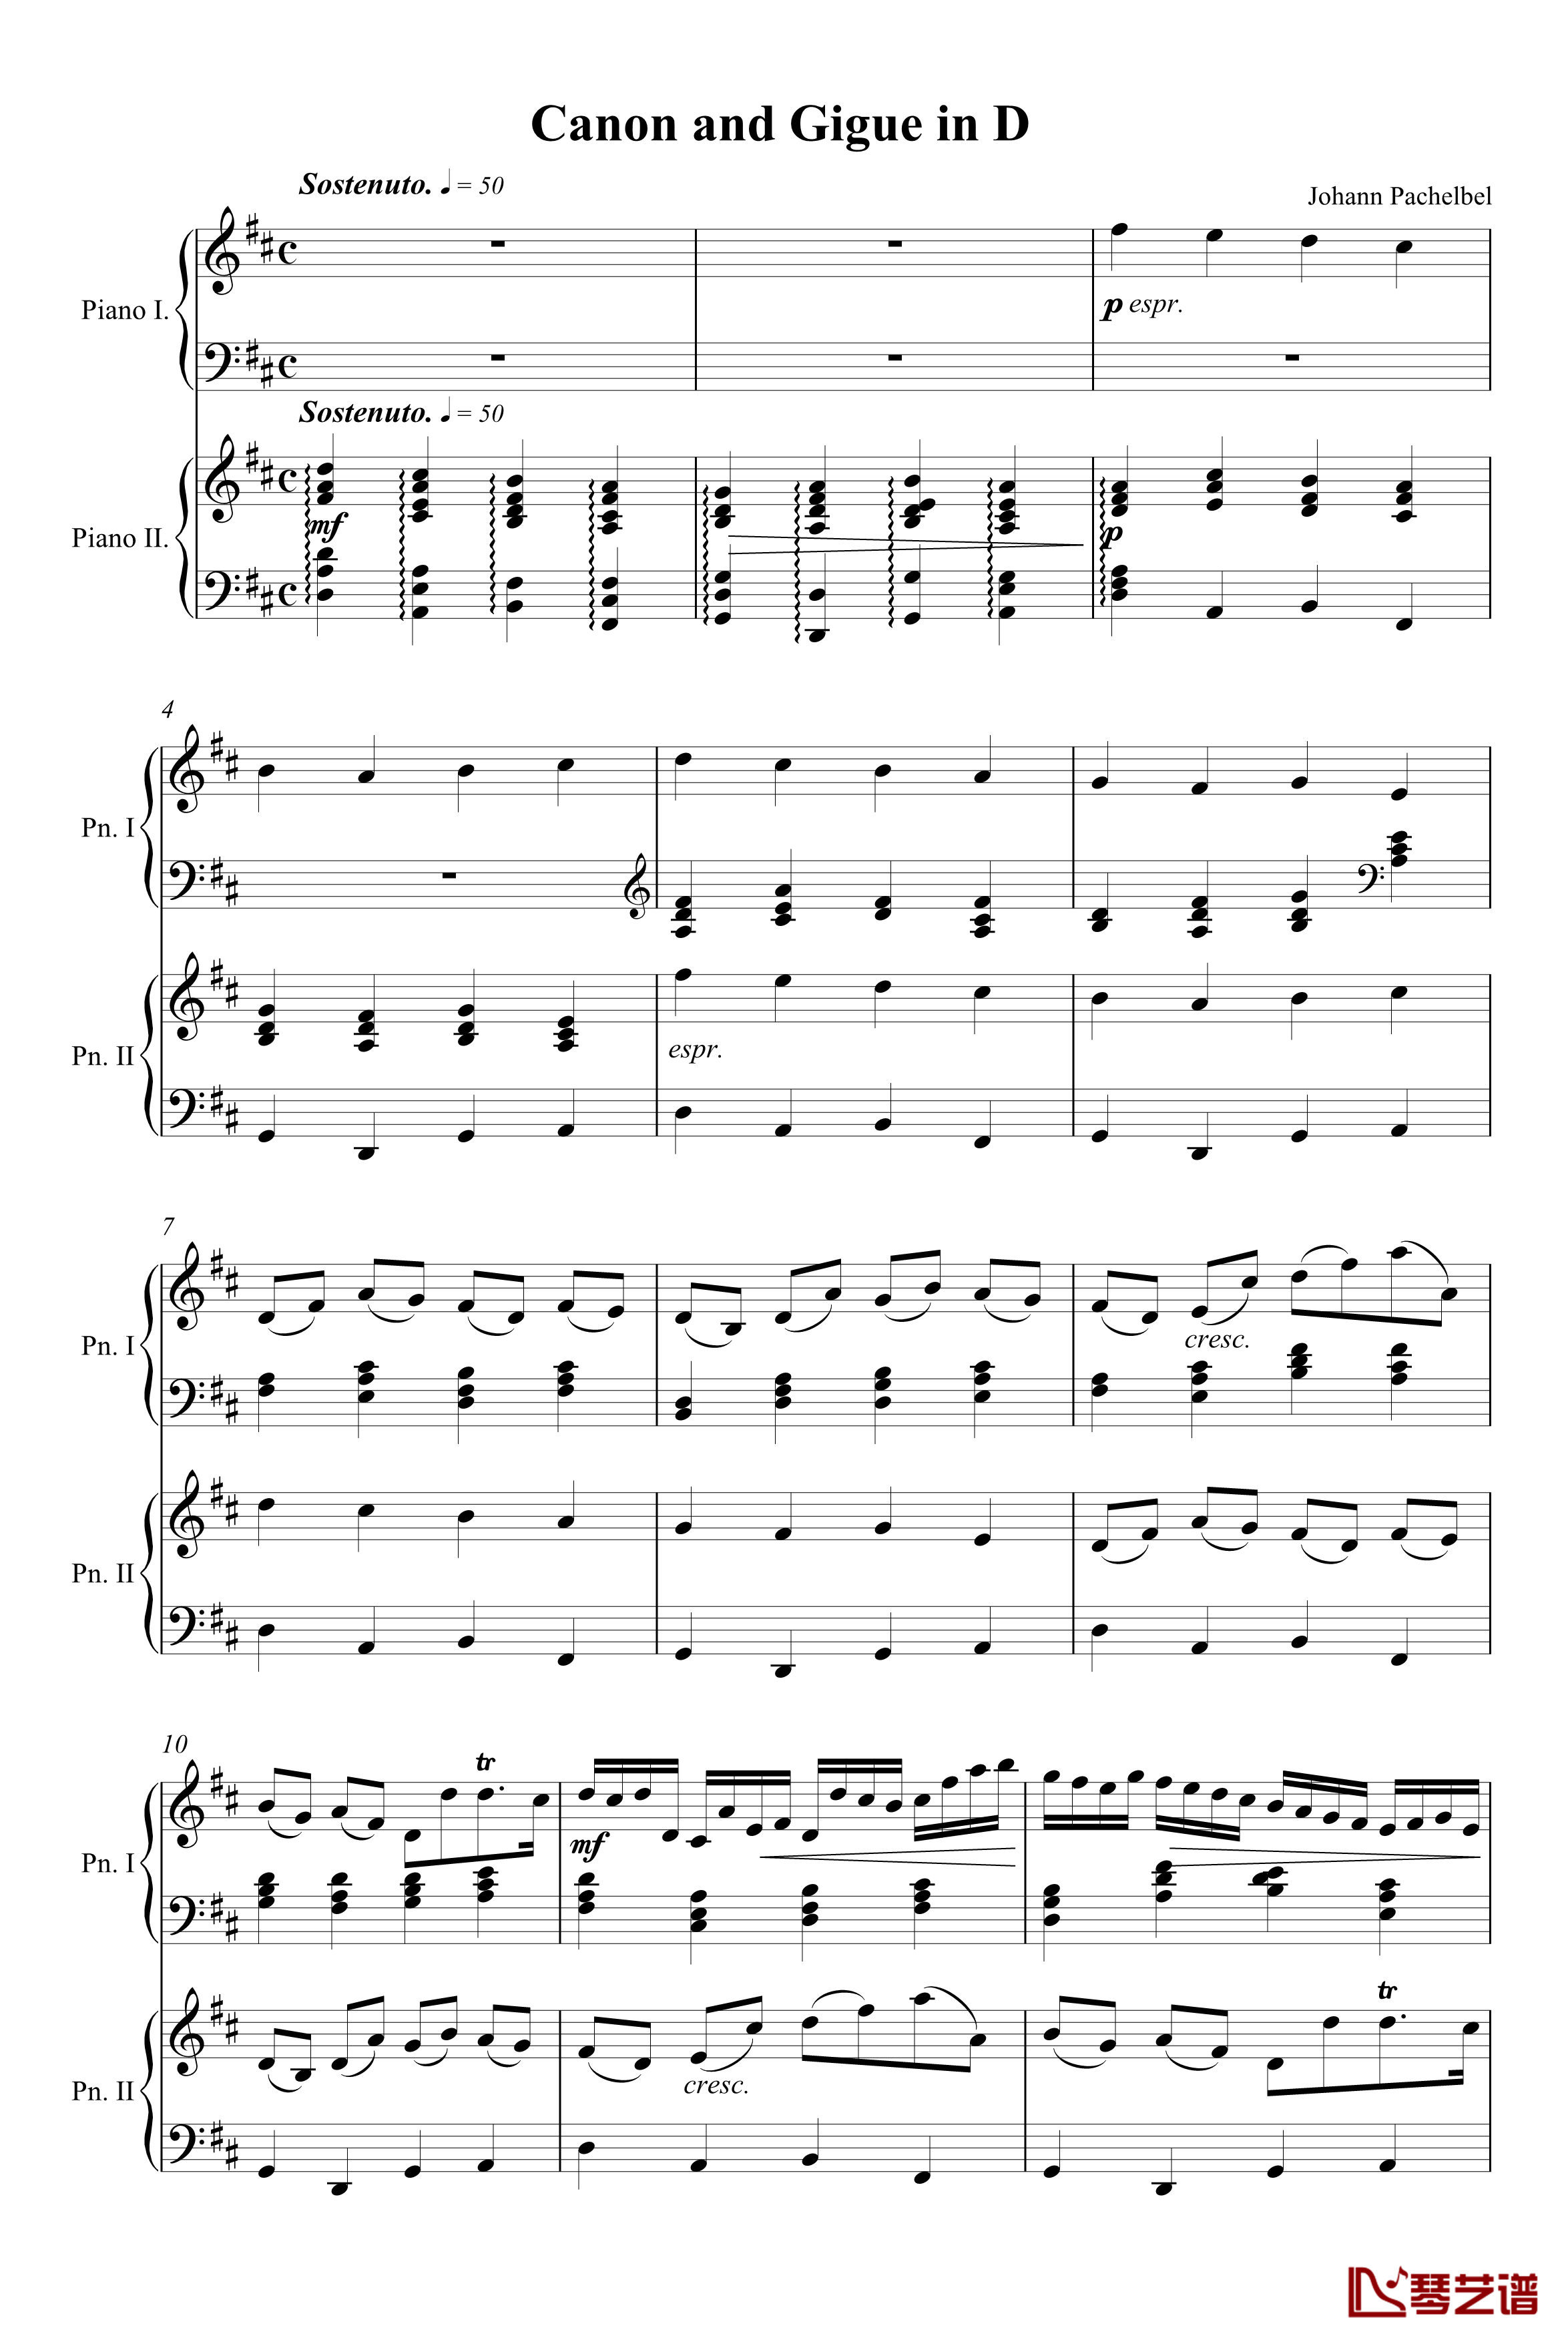 卡农钢琴二重奏版钢琴谱-帕赫贝尔-Pachelbel1